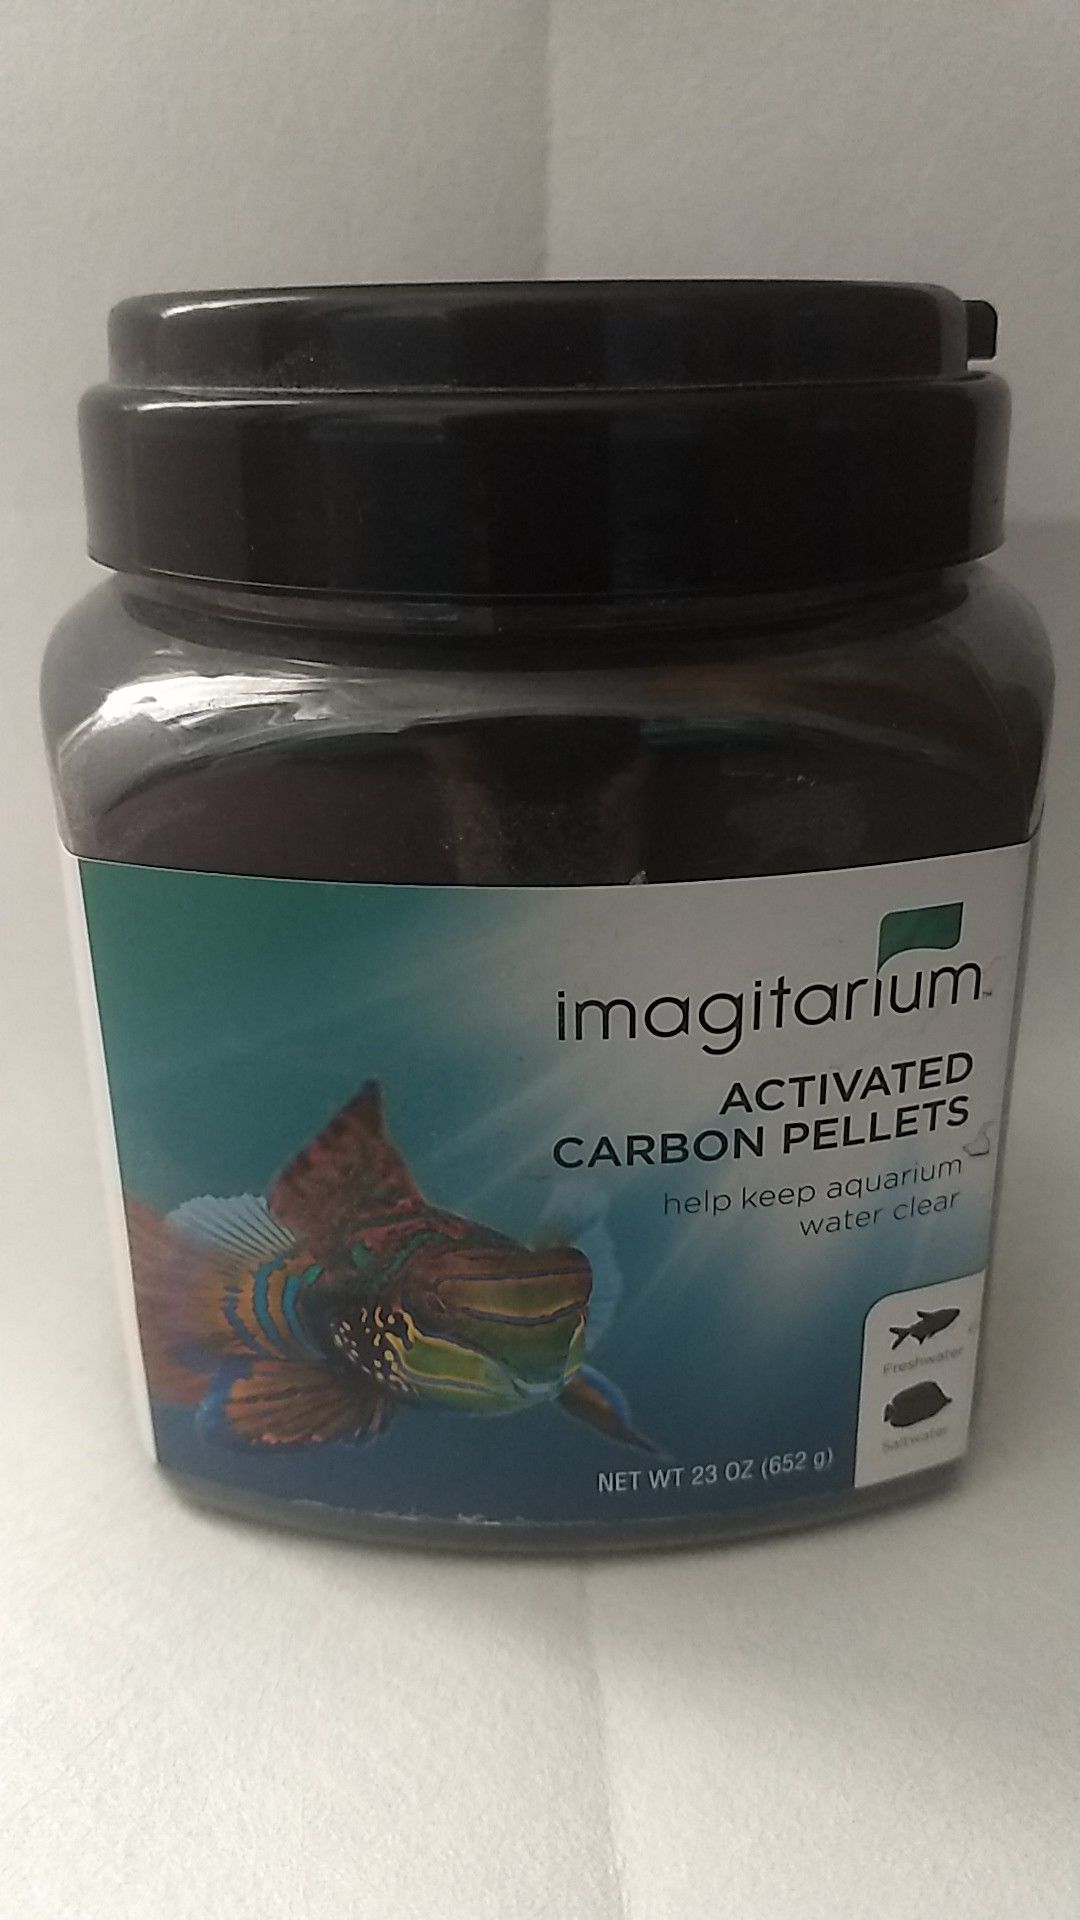 Imagitarium activated carbon pellets